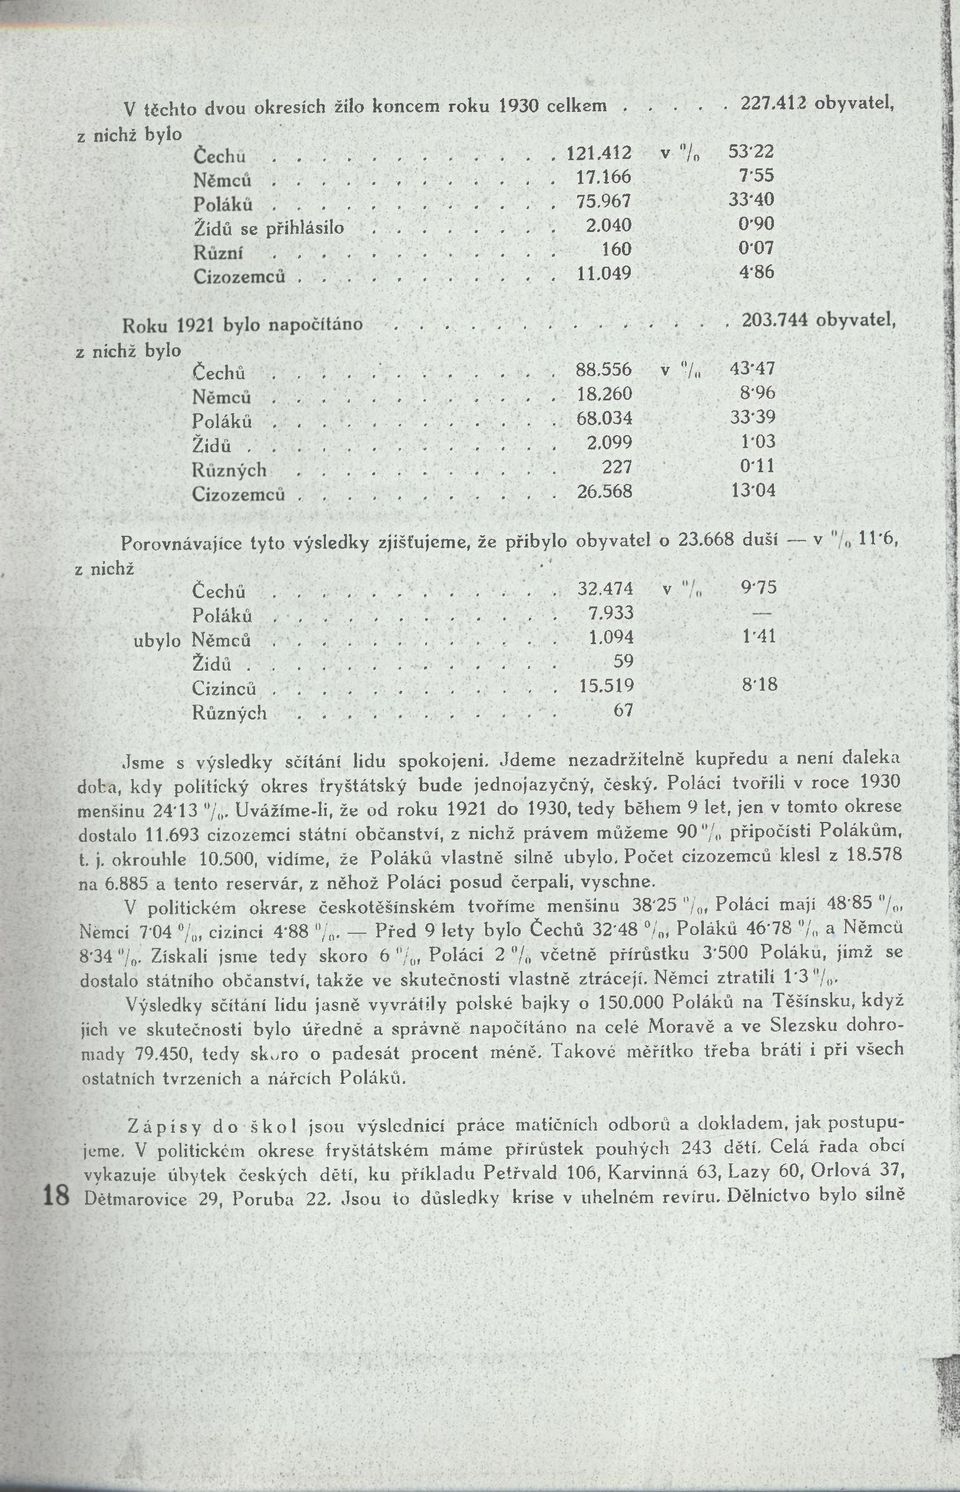 568 13*04 Porovnávajíce tyto výsledky zjišťujeme, že přibylo obyvatel o 23.668 duší v 11*6, z nichž. ; - Čechů....... -,.. 32.474 v. 9*75 Poláků.... <.. 7.933 ubylo Němců......... -... 1.094 1*41 Židů.